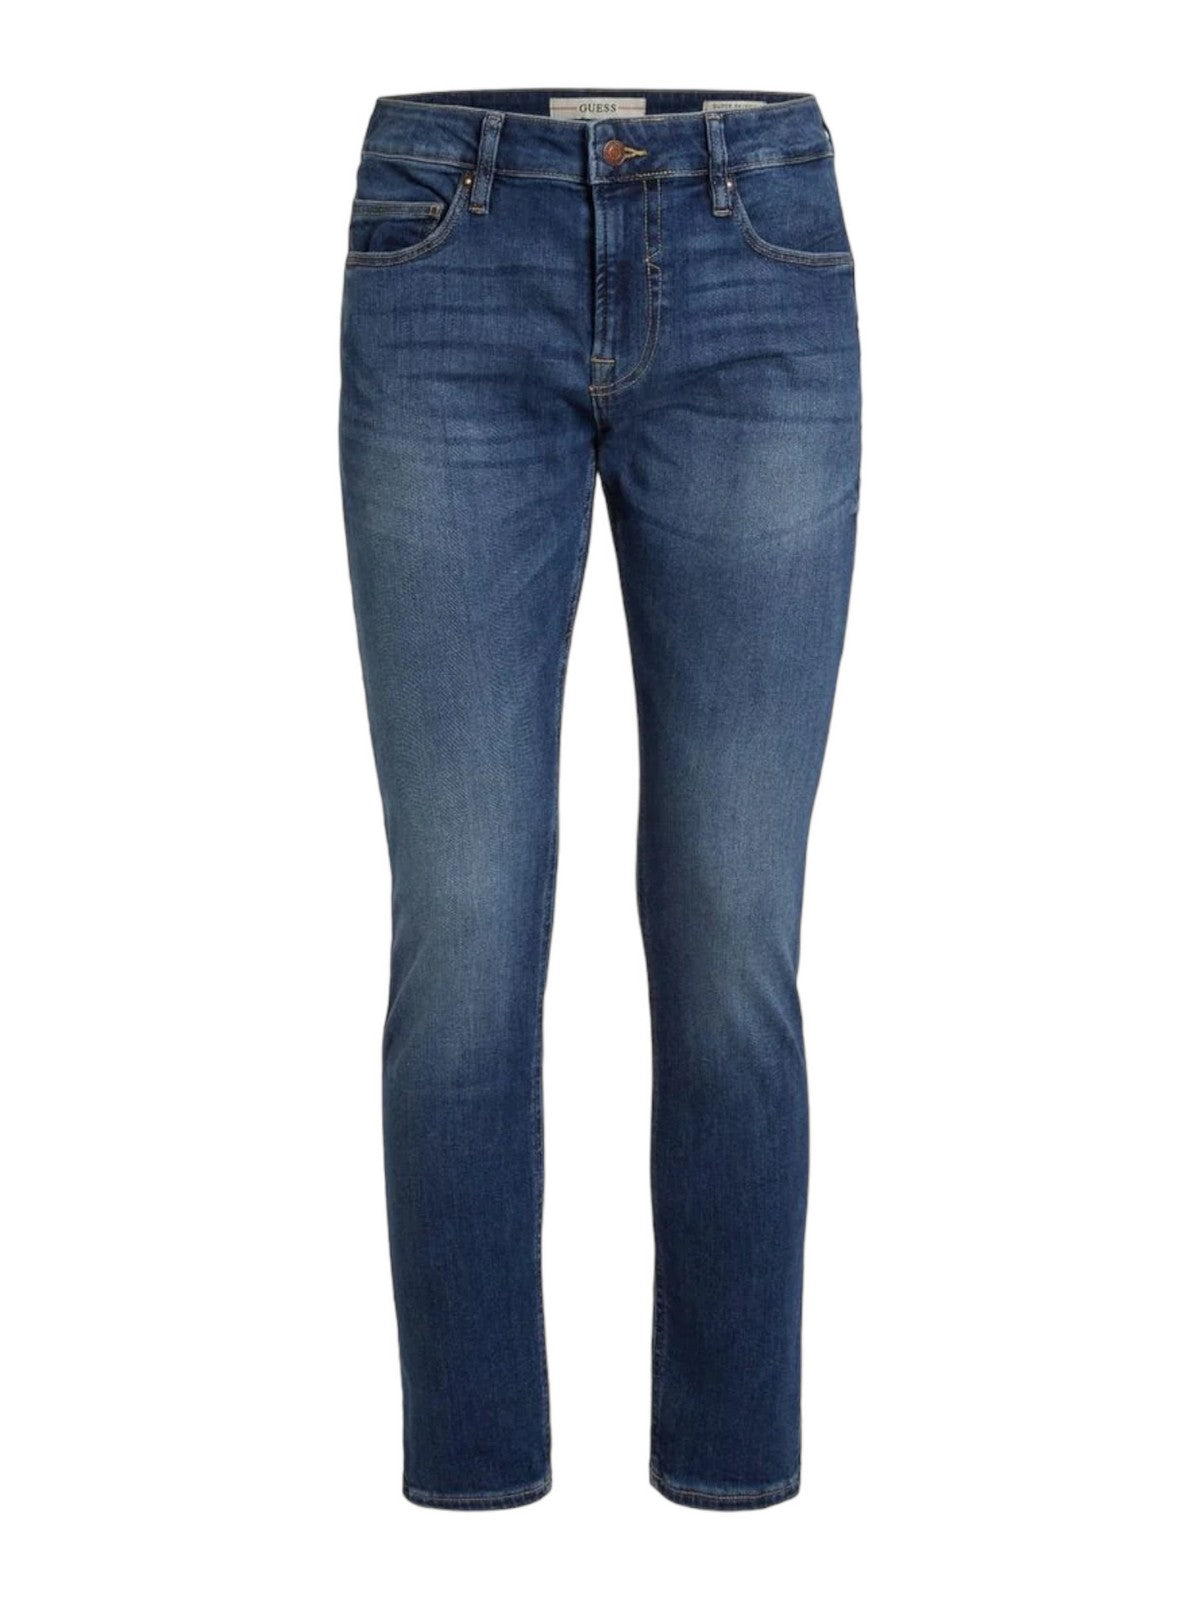 GUESS Jeans Uomo  M1YA27 D4GV5 Blu